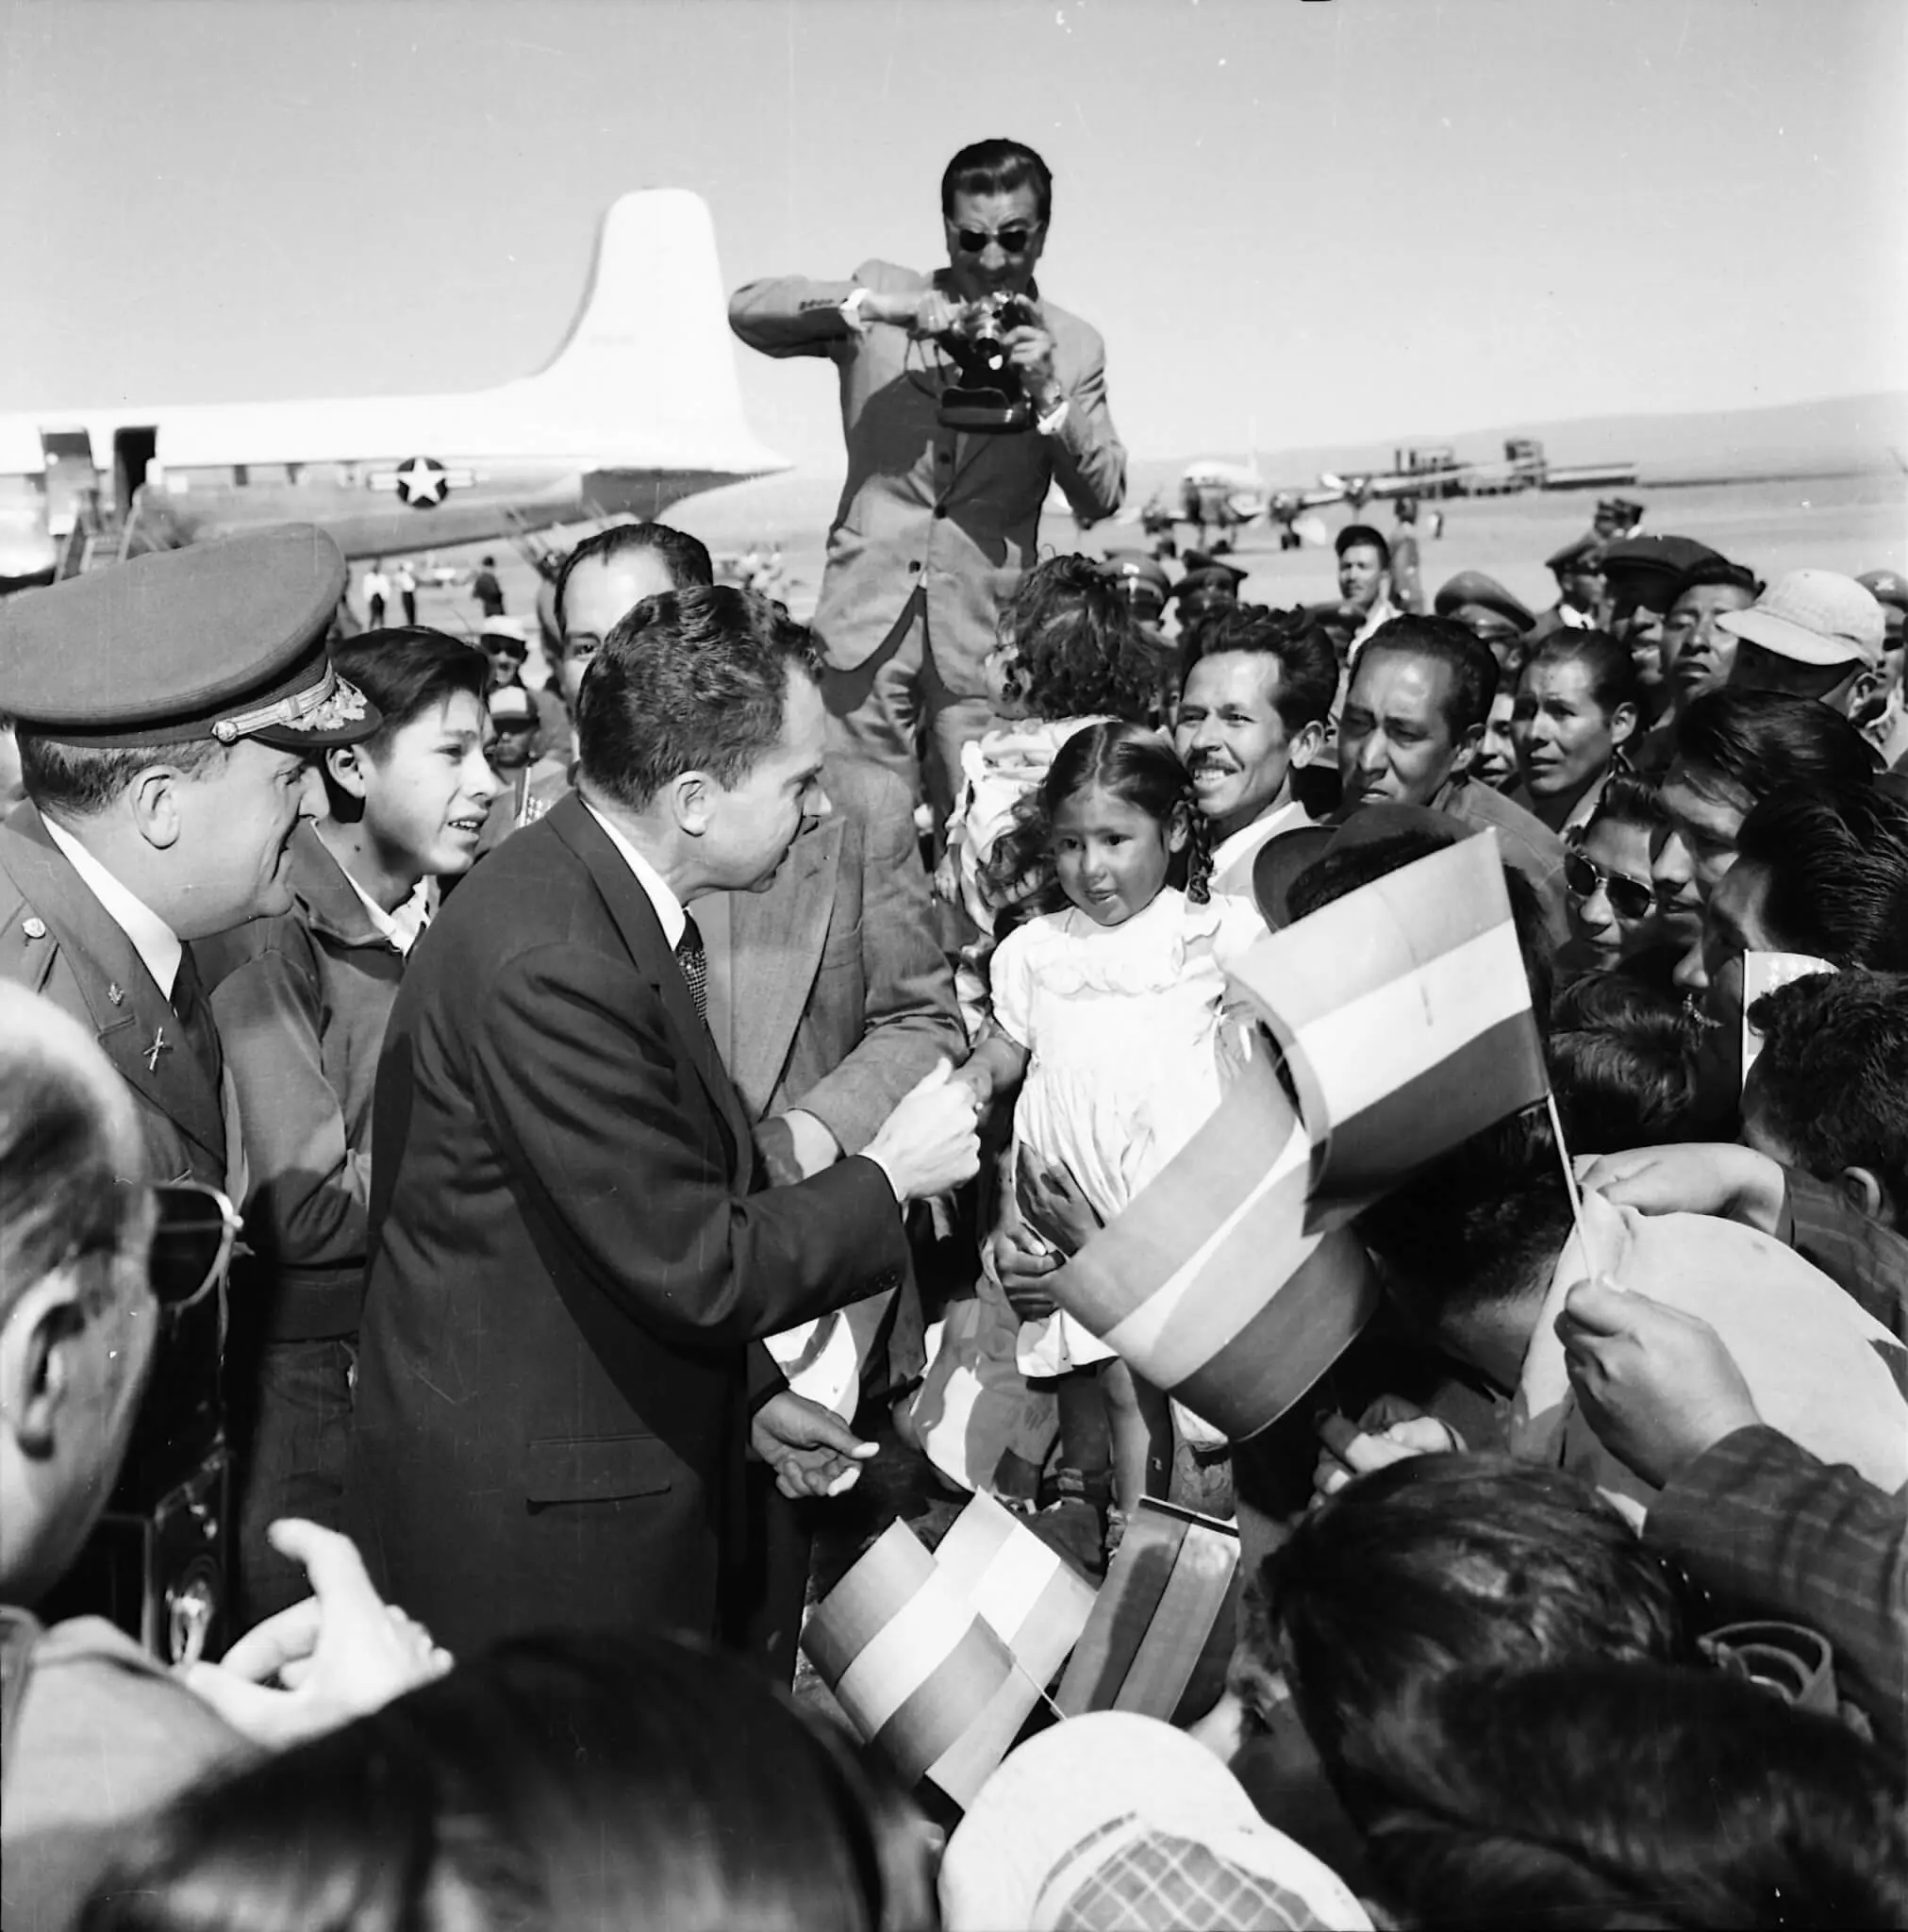 In seiner Funktion als US-Außenminister absolviert Richard Nixon im Mai 1958 einen Staatsbesuch in Bolivien. Noch am Rollfeld wird er von Journalisten und einer begeisterten Menge begrüßt. Im Hintergrund ist der Flieger von Nixon zu sehen.